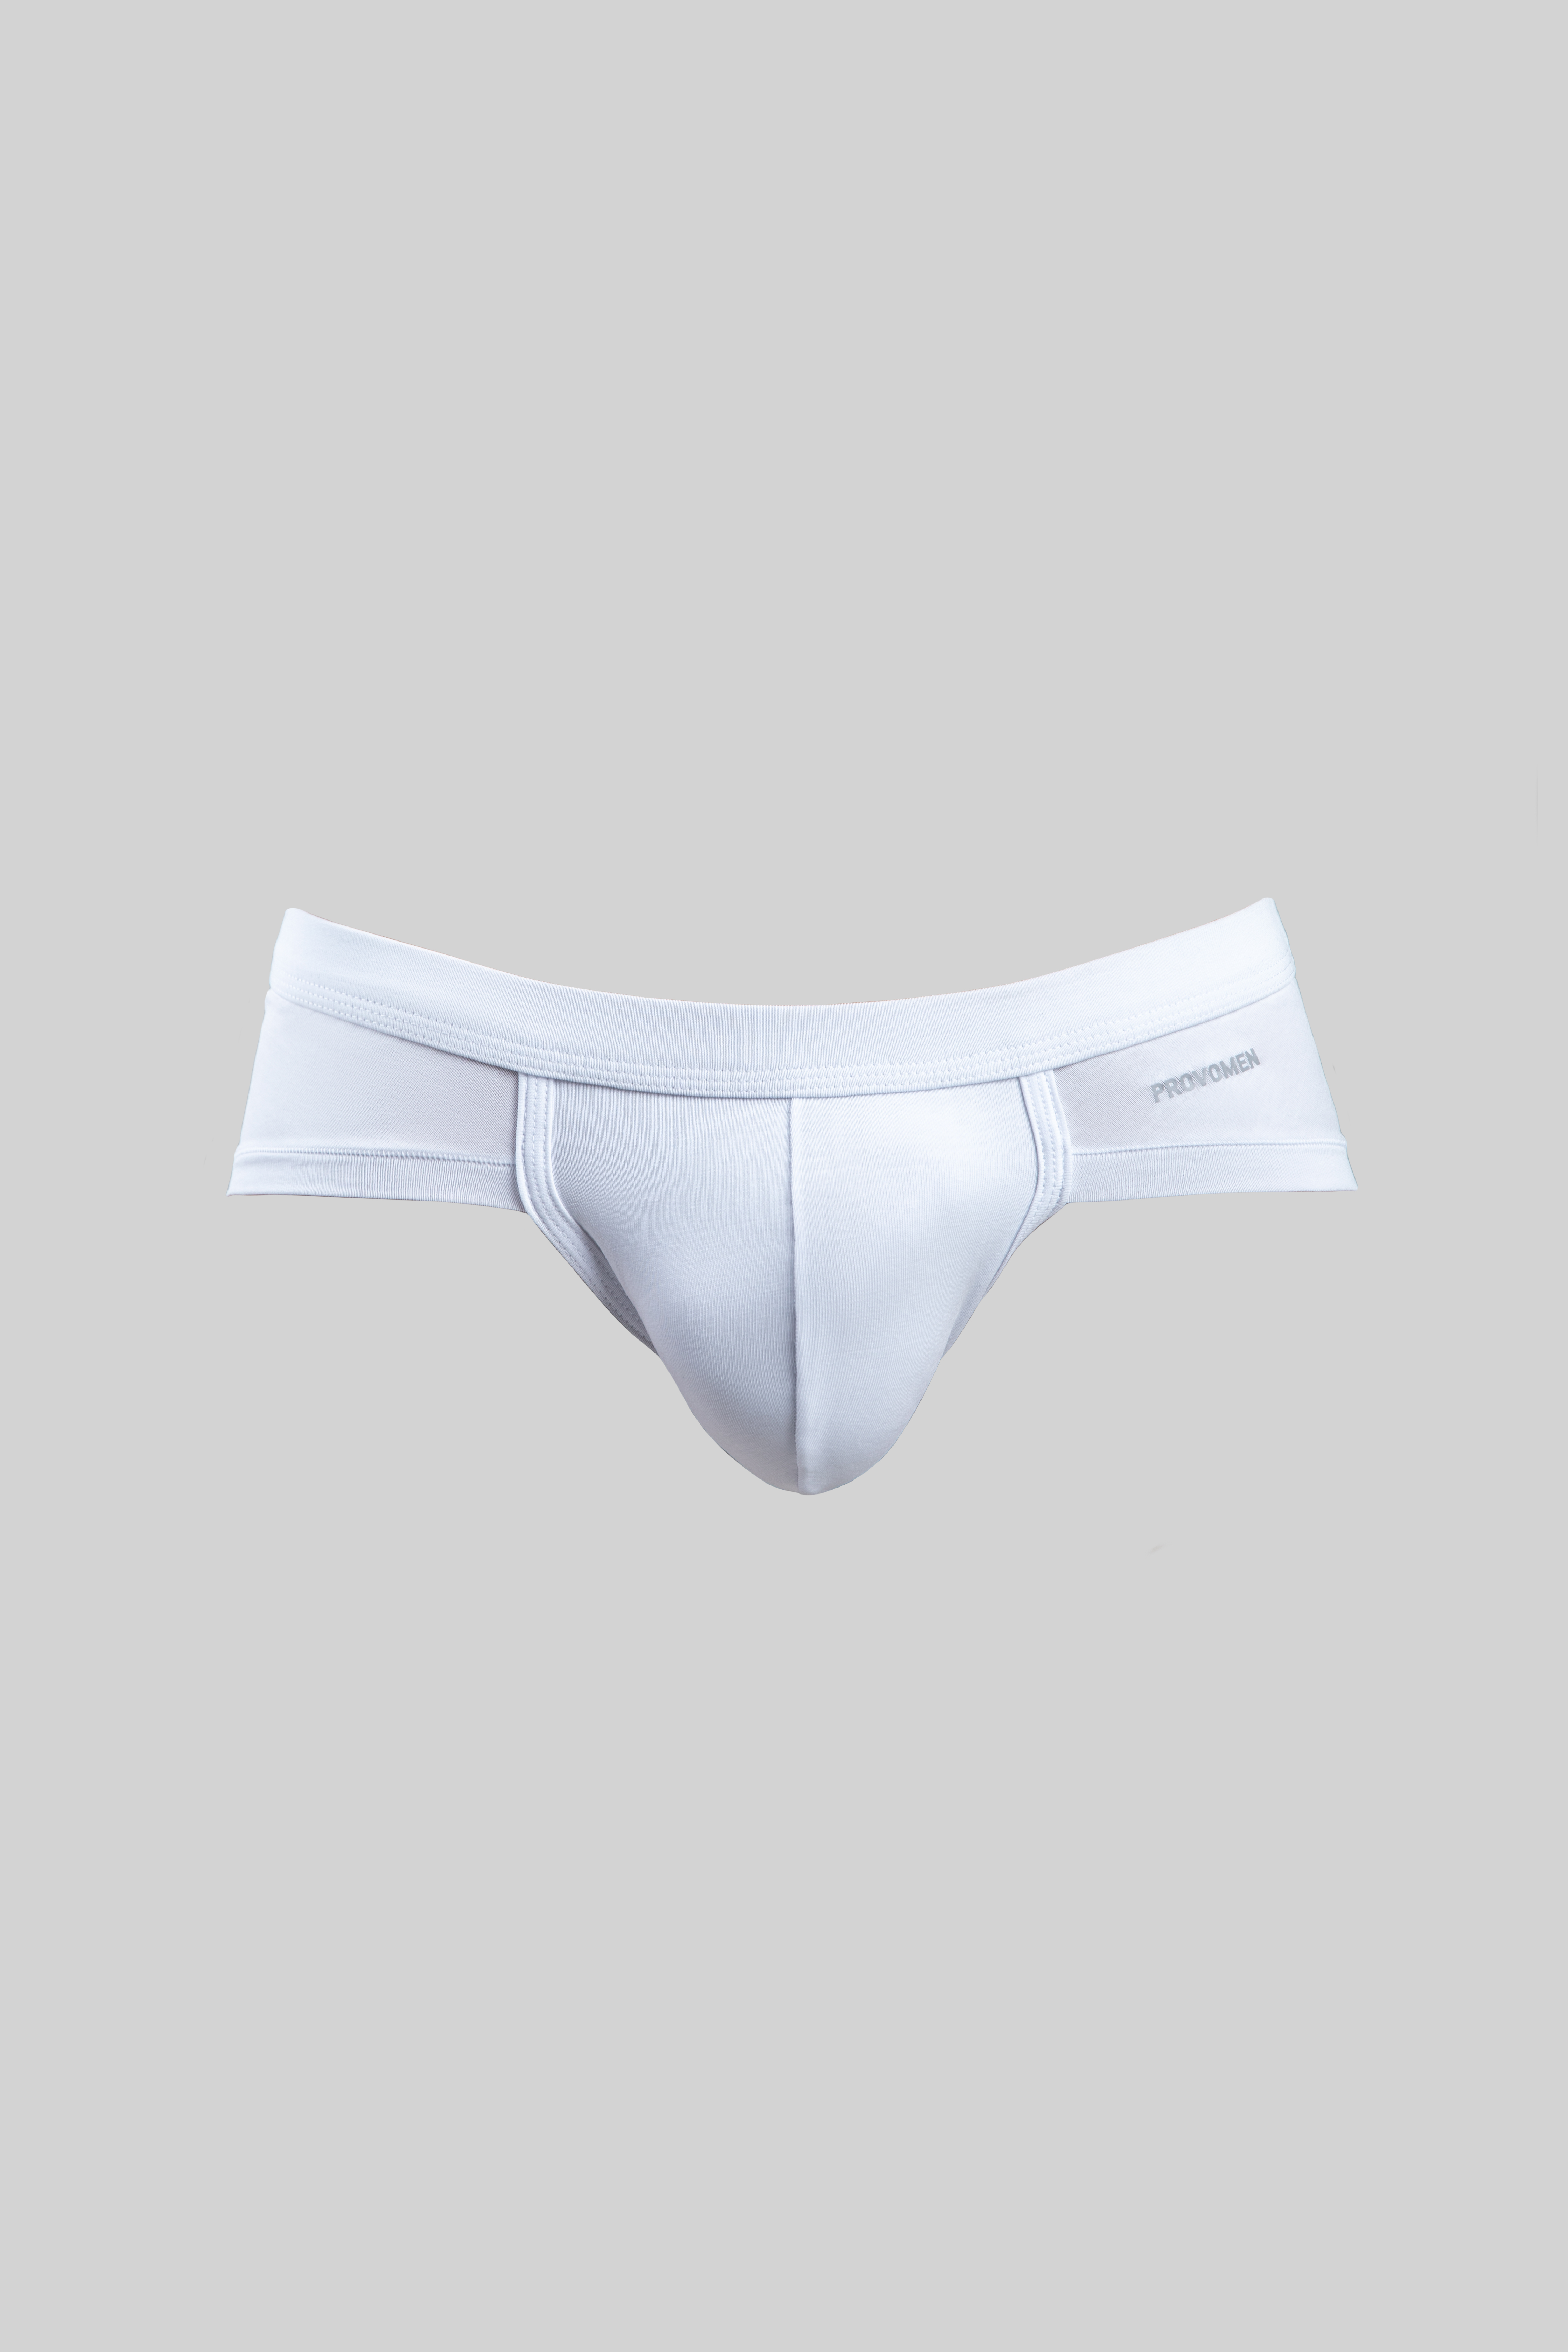 Hipster Briefs (White) - official online store of men's underwear Provomen